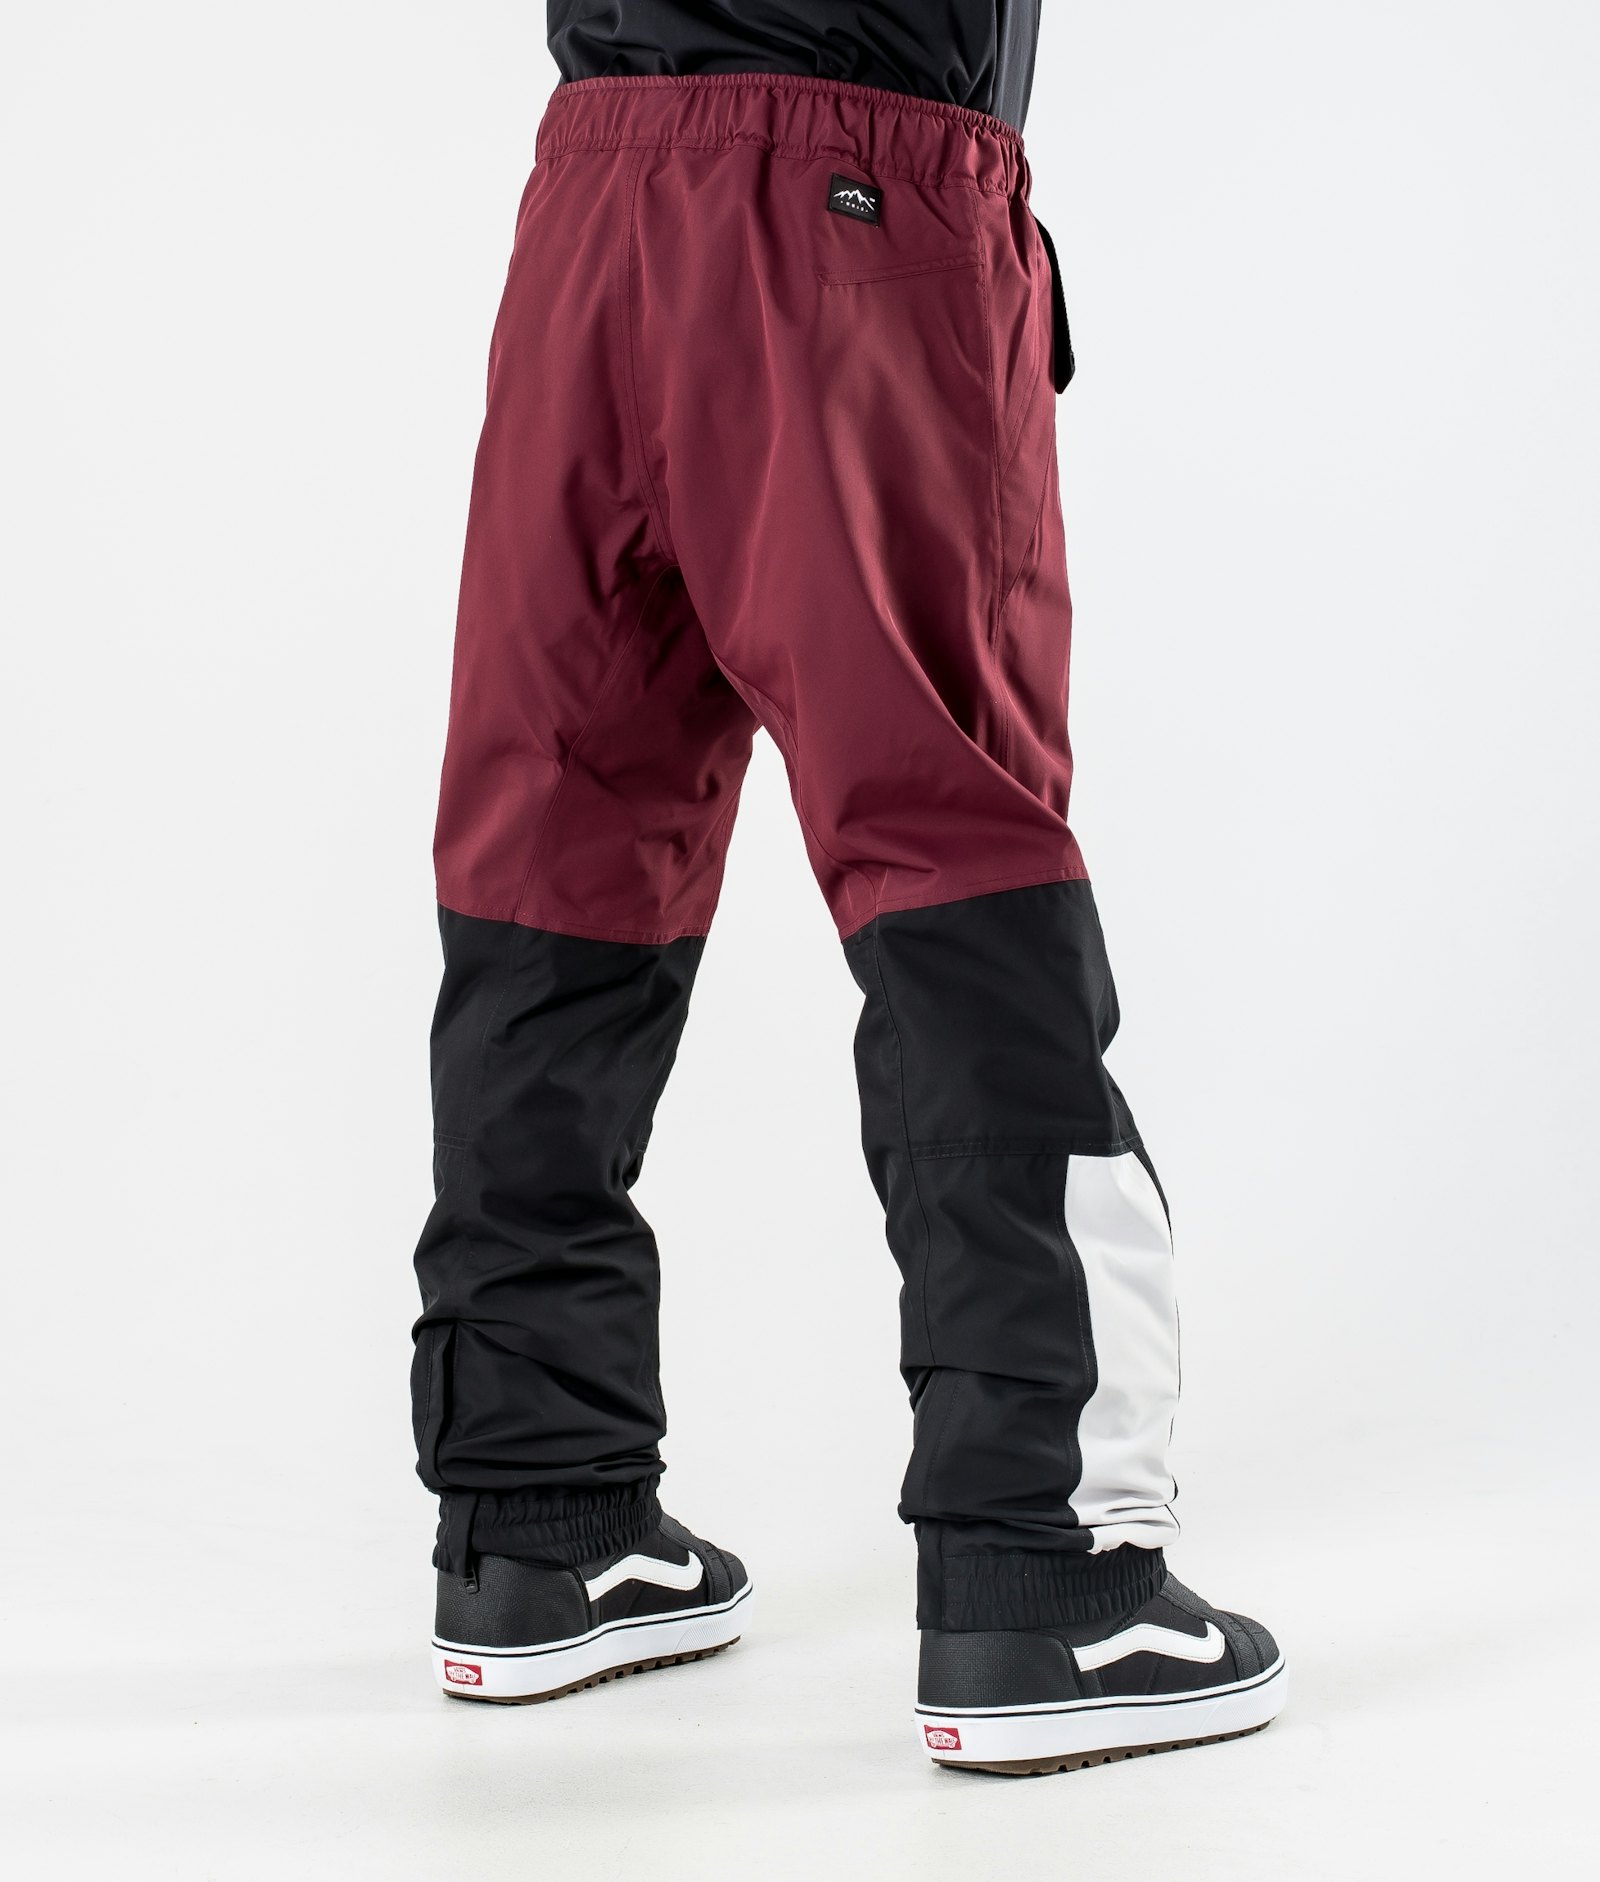 Blizzard 2020 Pantalon de Snowboard Homme Limited Edition Burgundy Multicolour